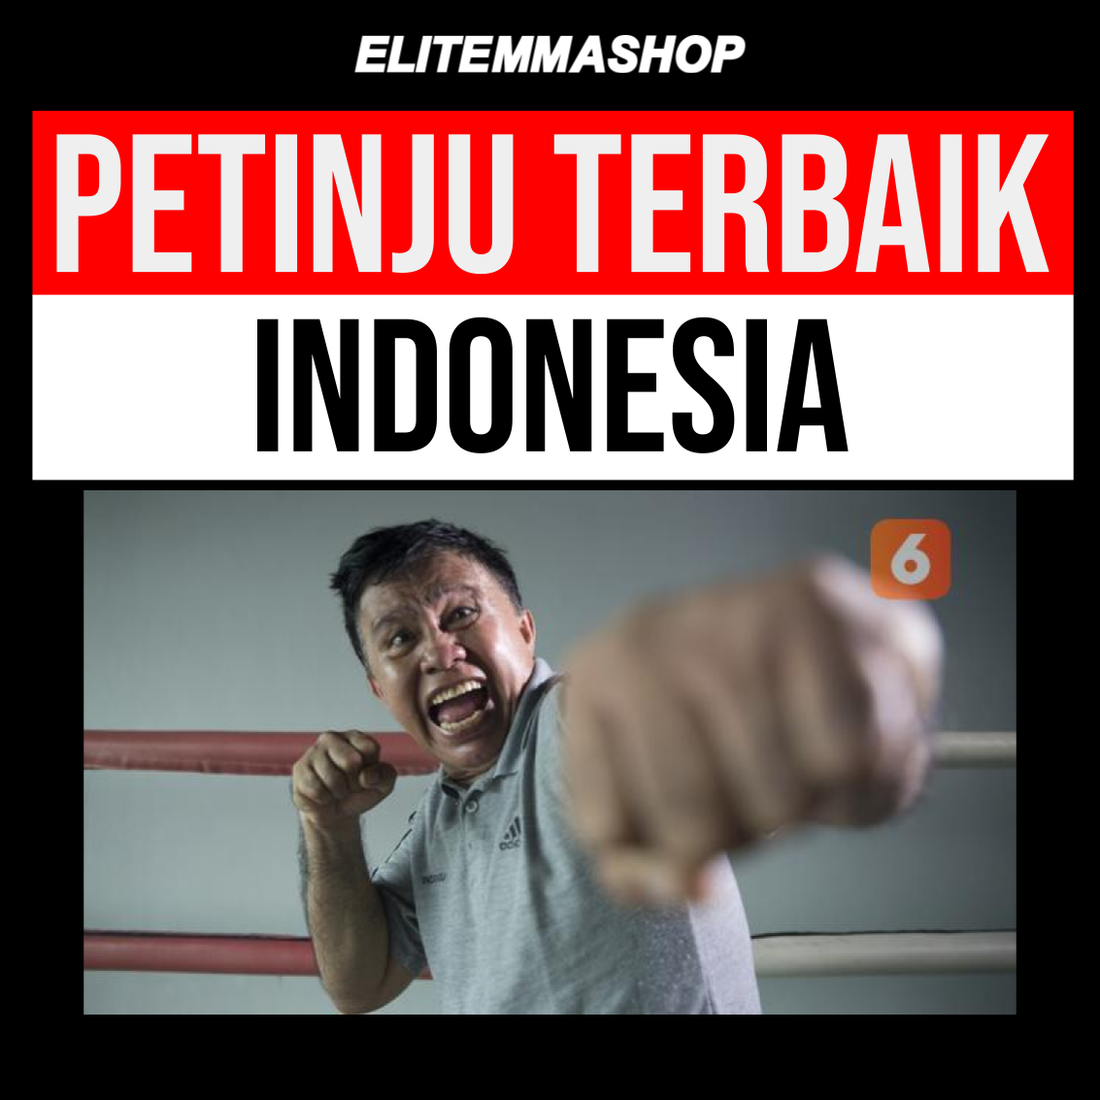 Siapa Petinju Terbaik Indonesia?